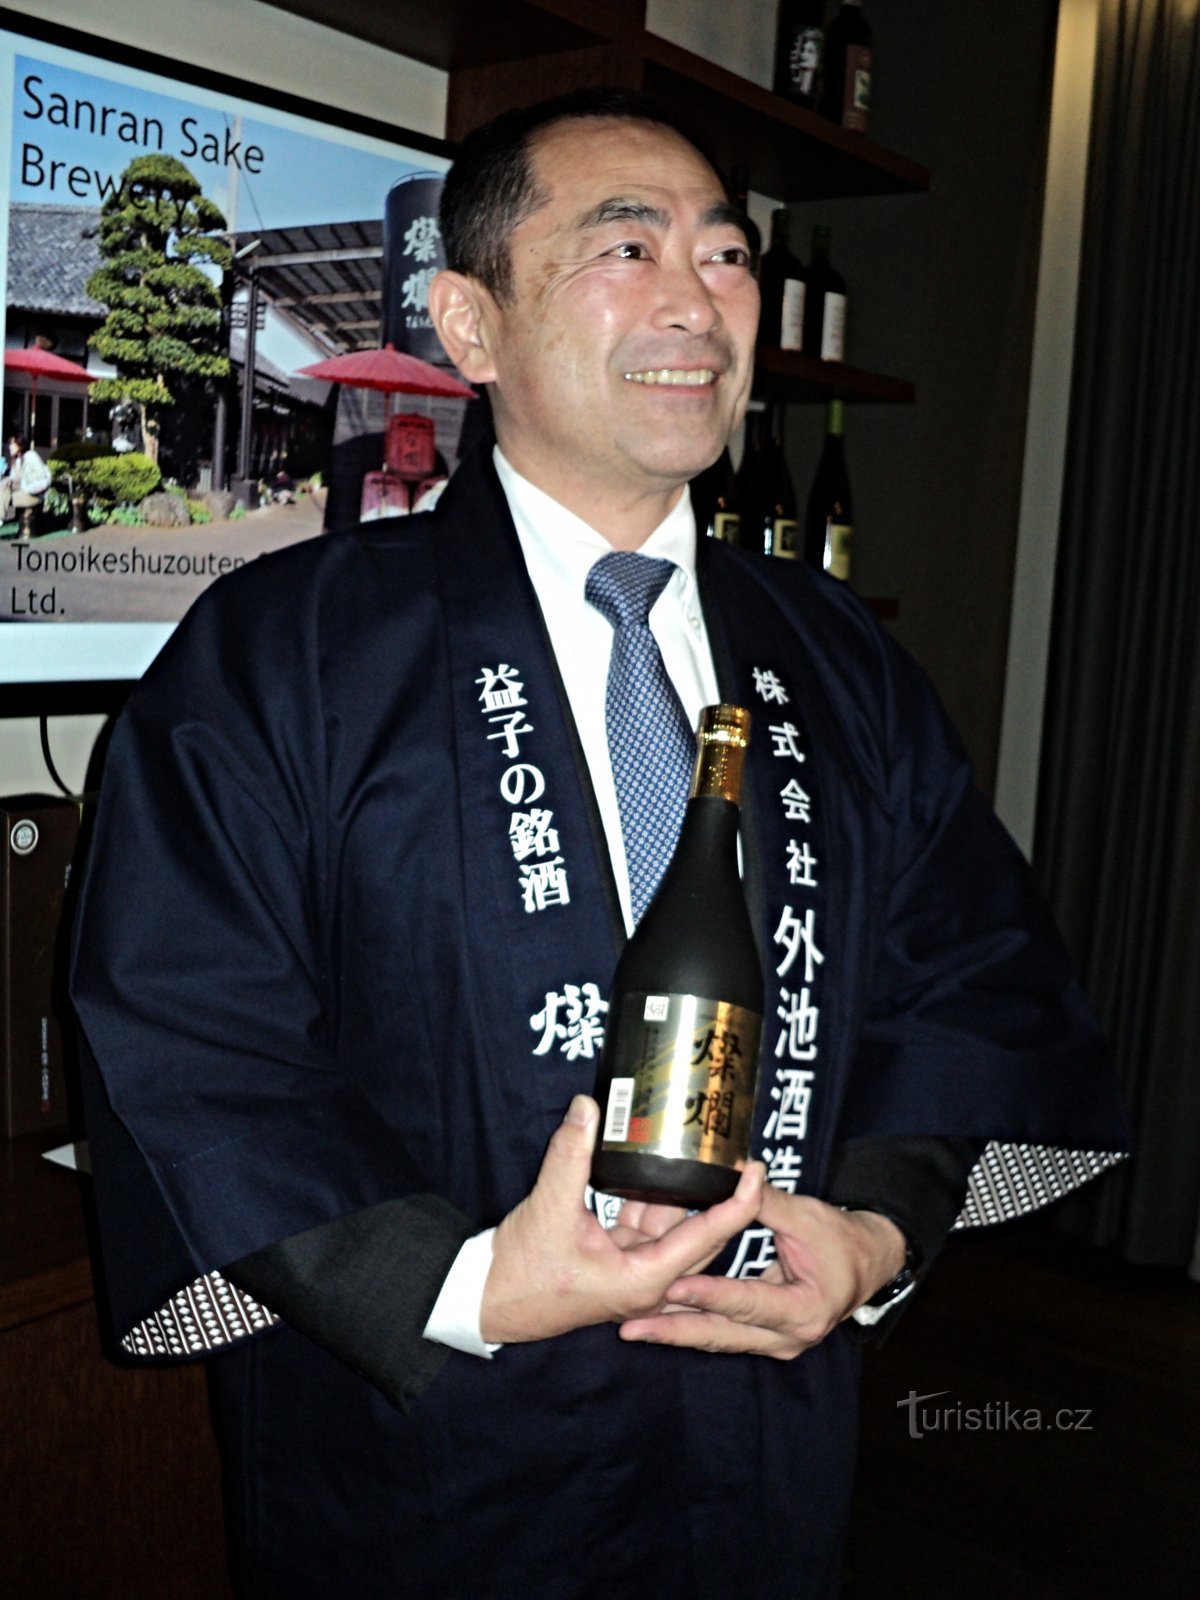 Shigeki Tonoike é um fabricante de saquê de terceira geração.